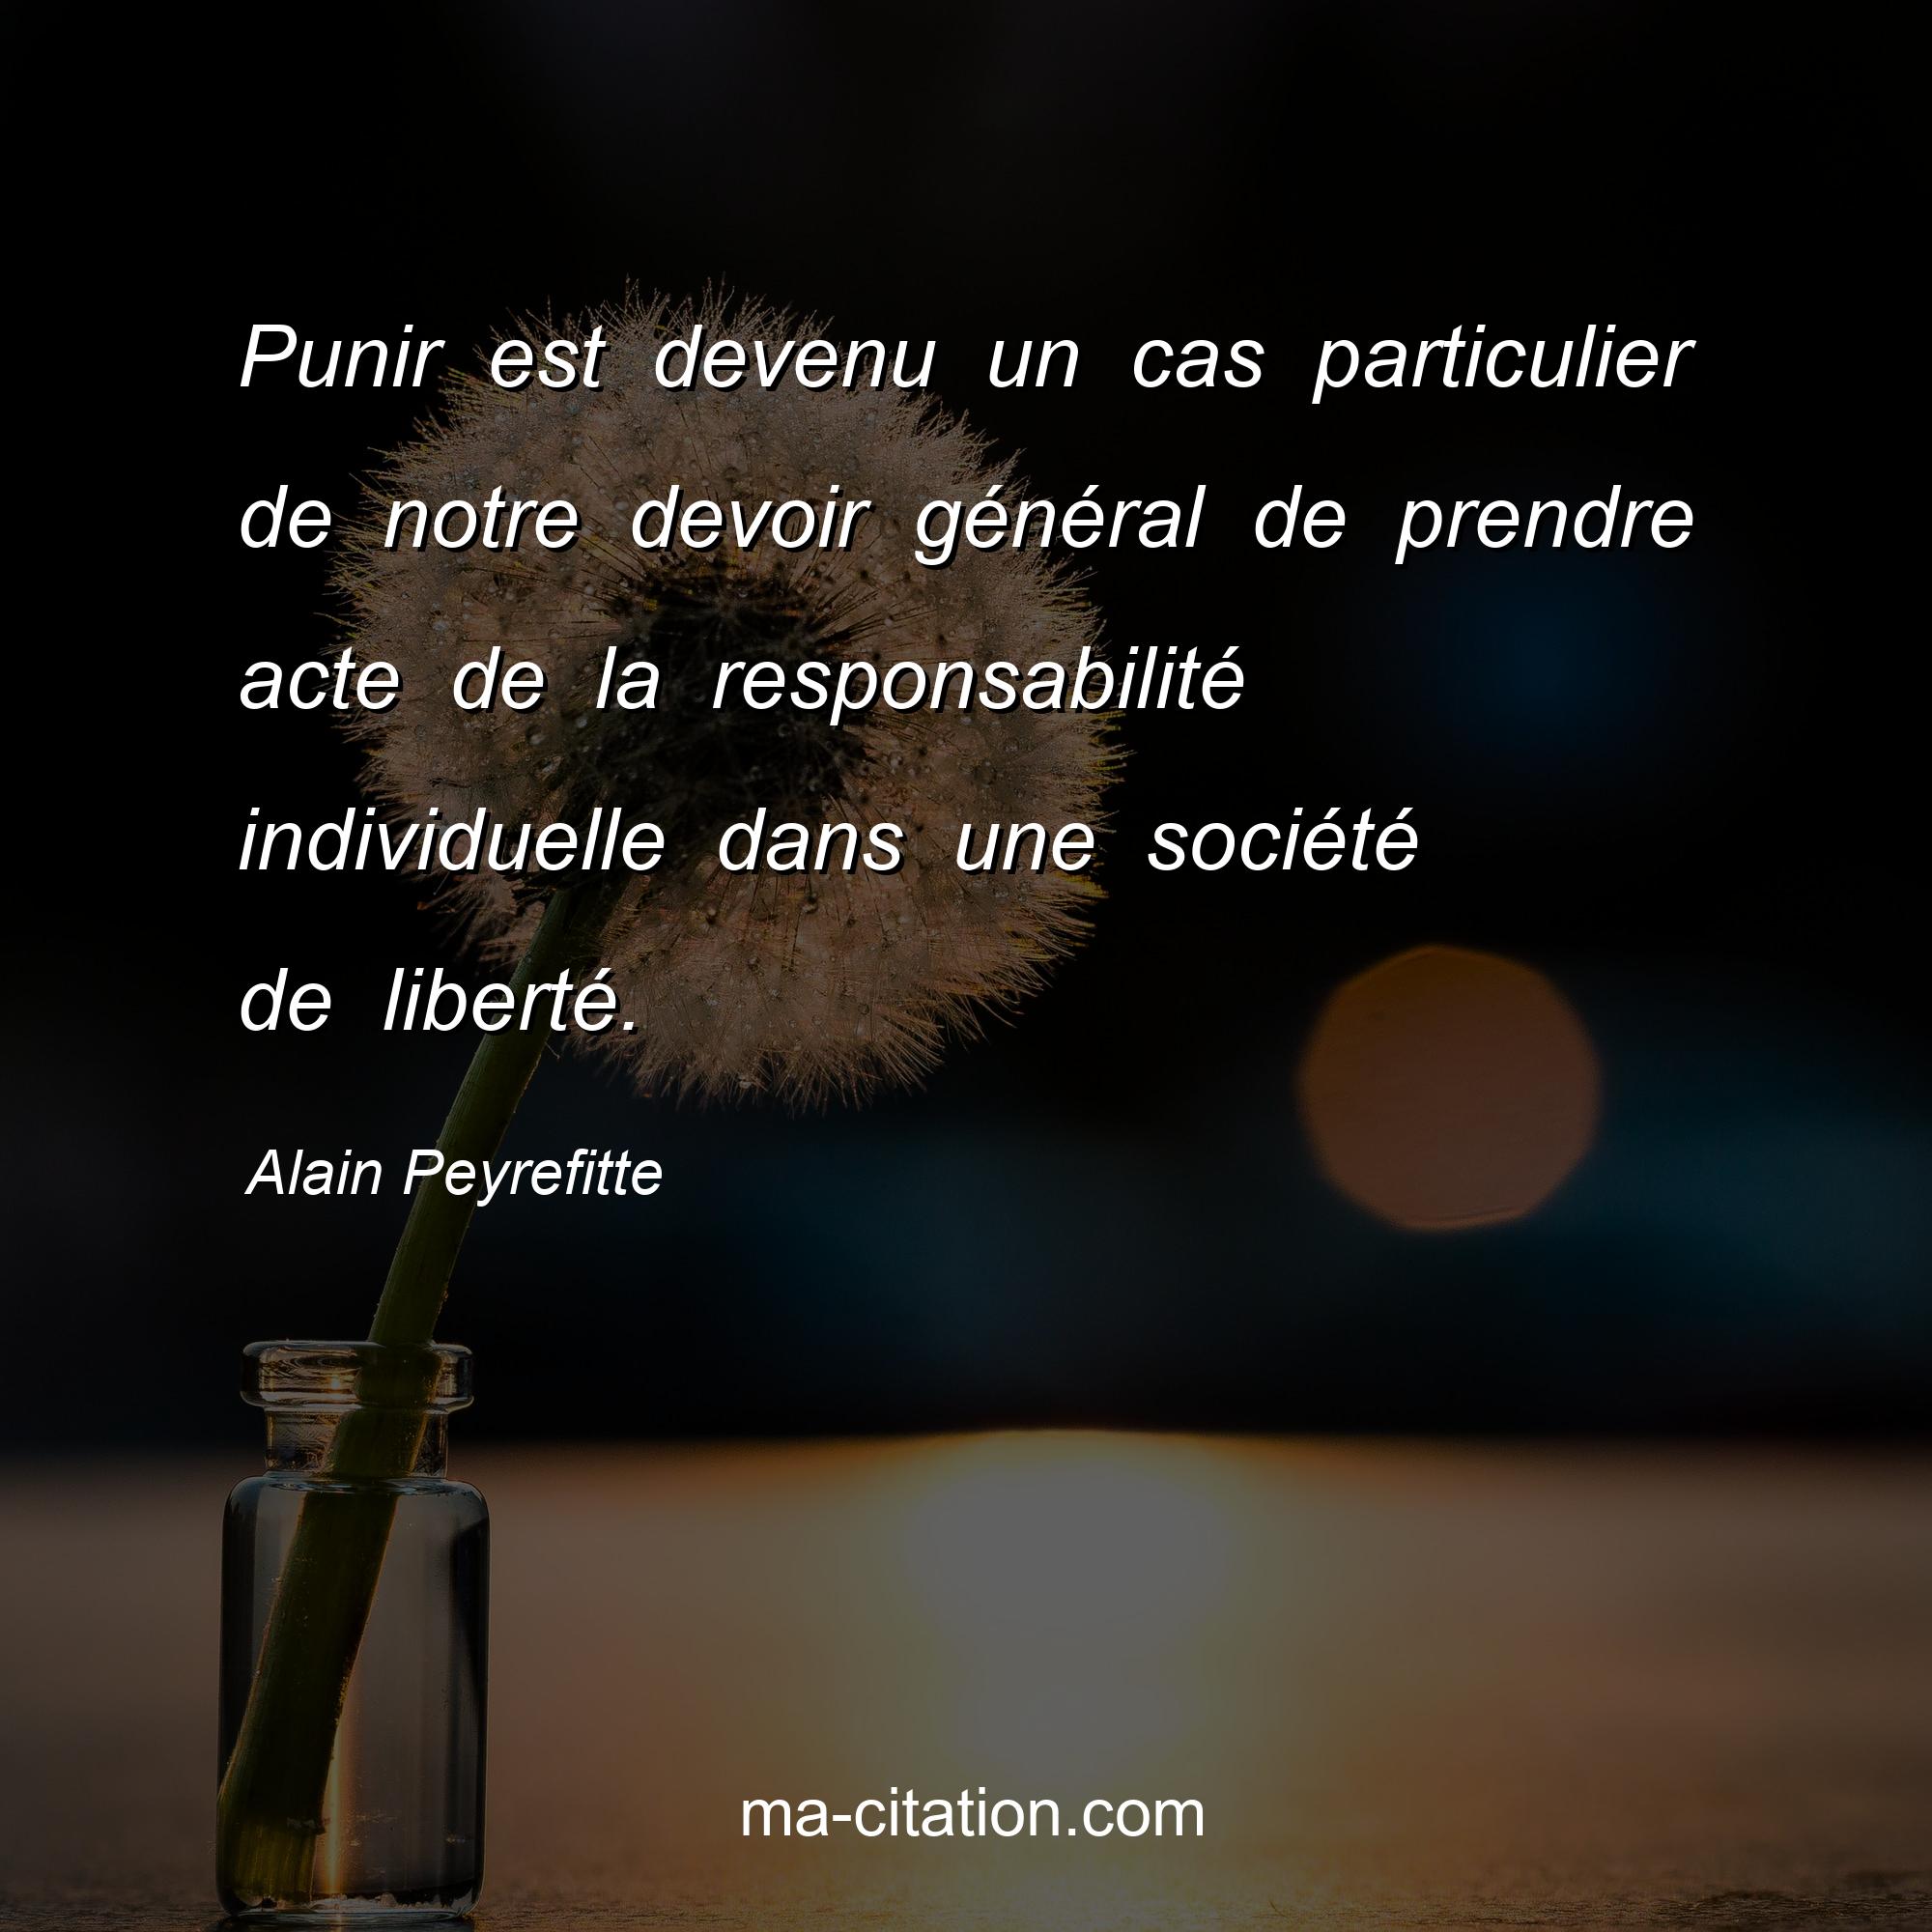 Alain Peyrefitte : Punir est devenu un cas particulier de notre devoir général de prendre acte de la responsabilité individuelle dans une société de liberté.